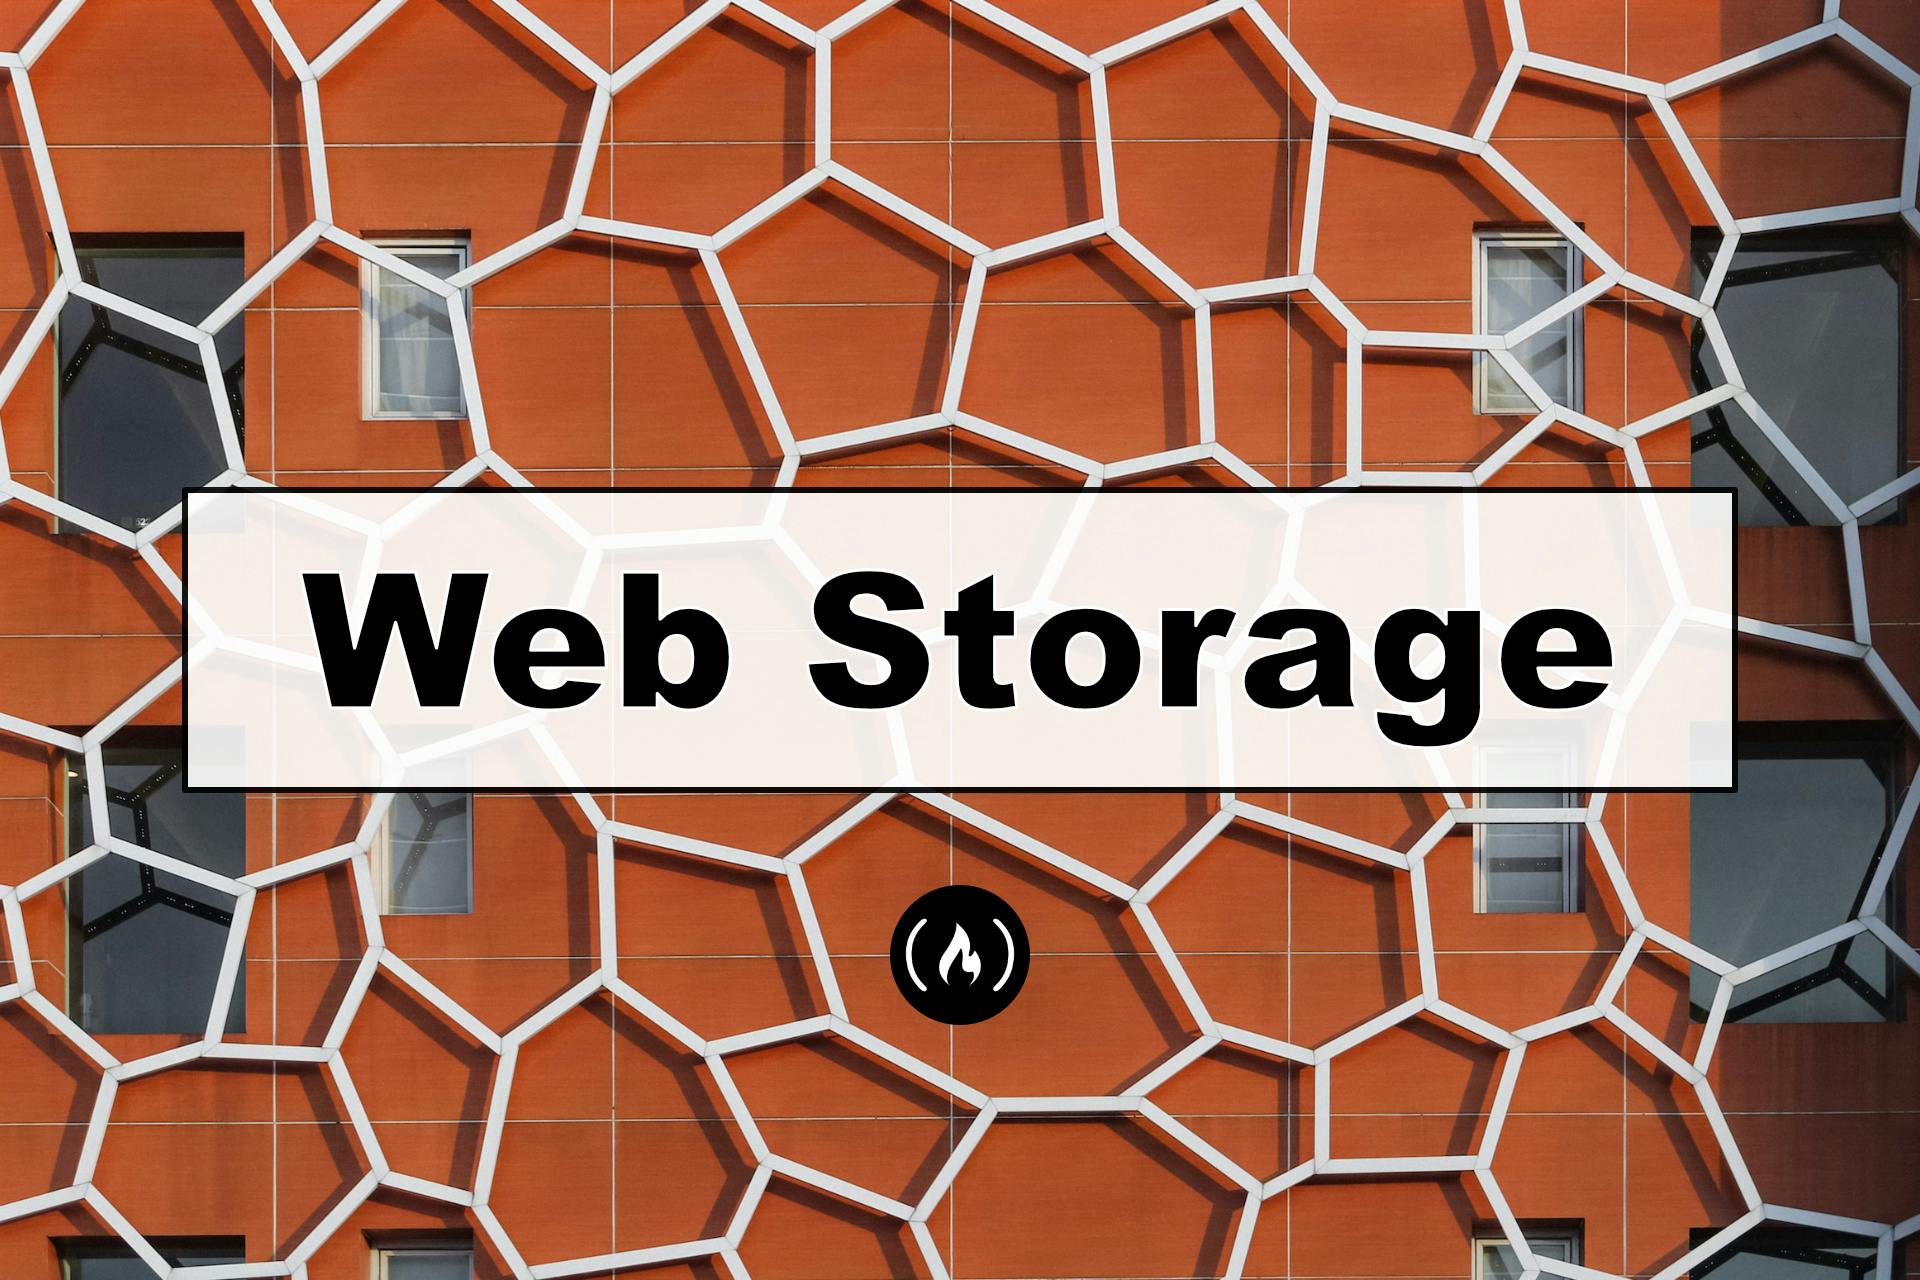 Web Storage Explained